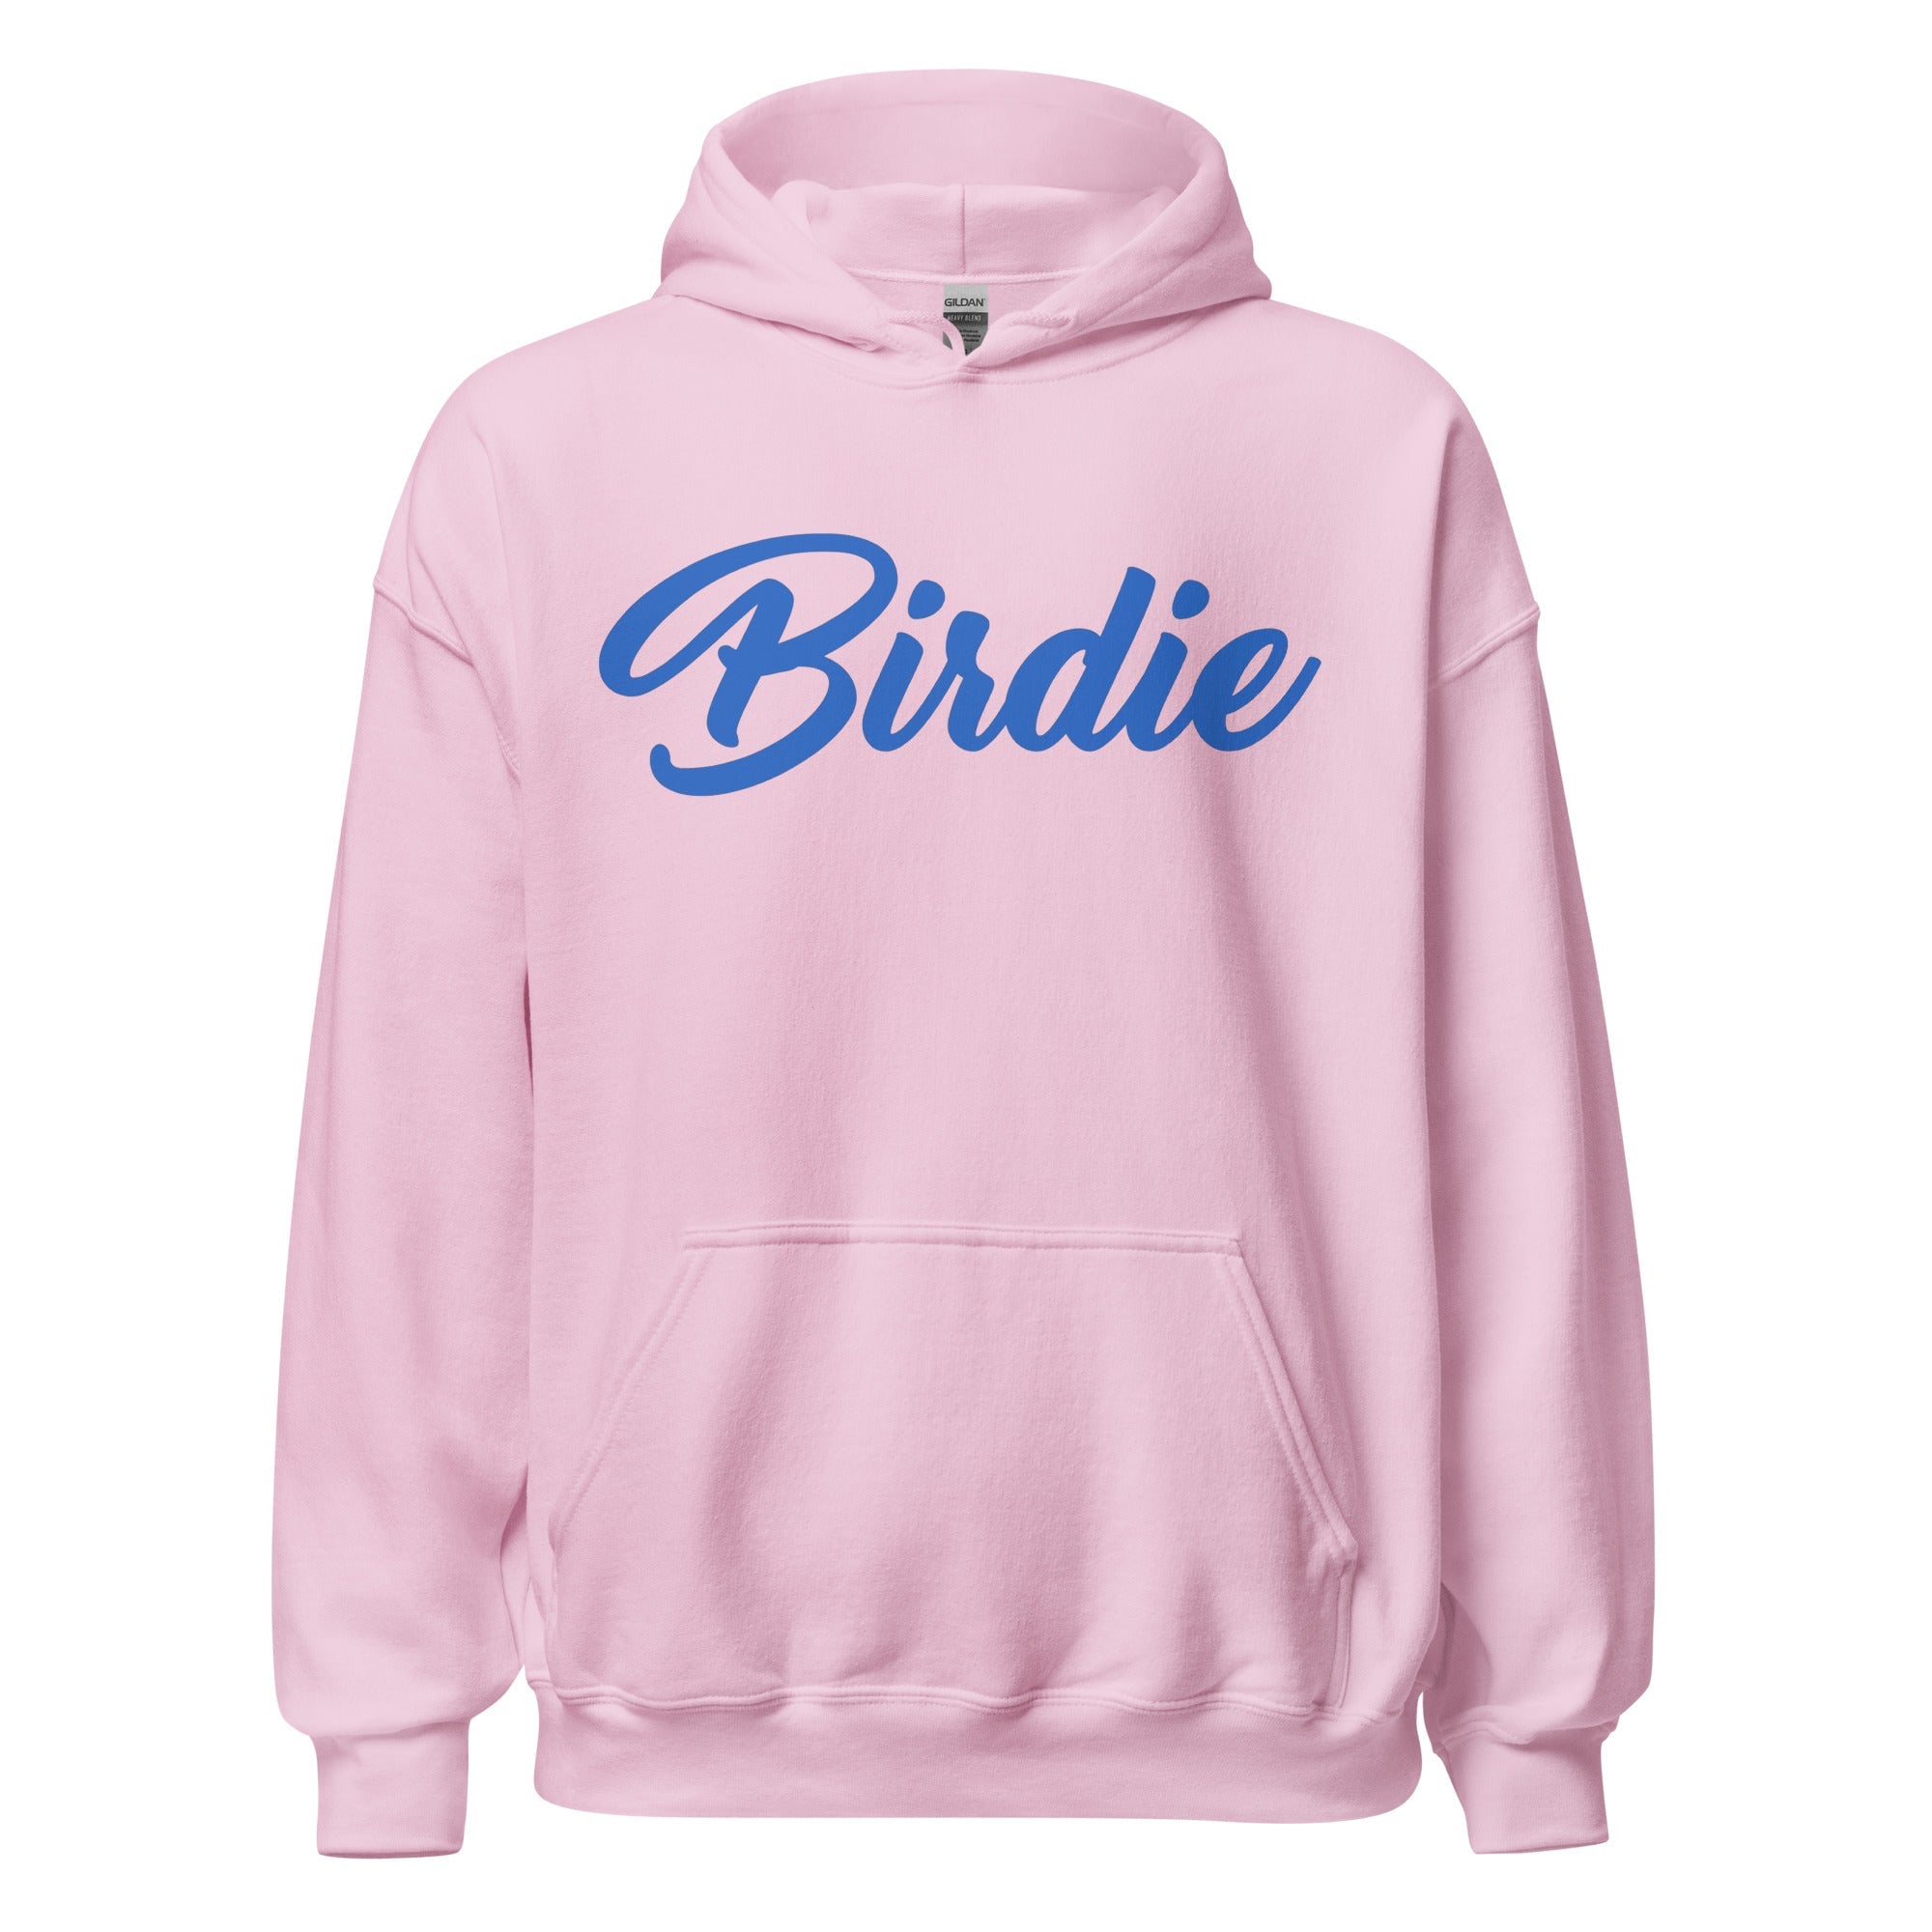 Birdie Threads Hoodie - Pink / Blue